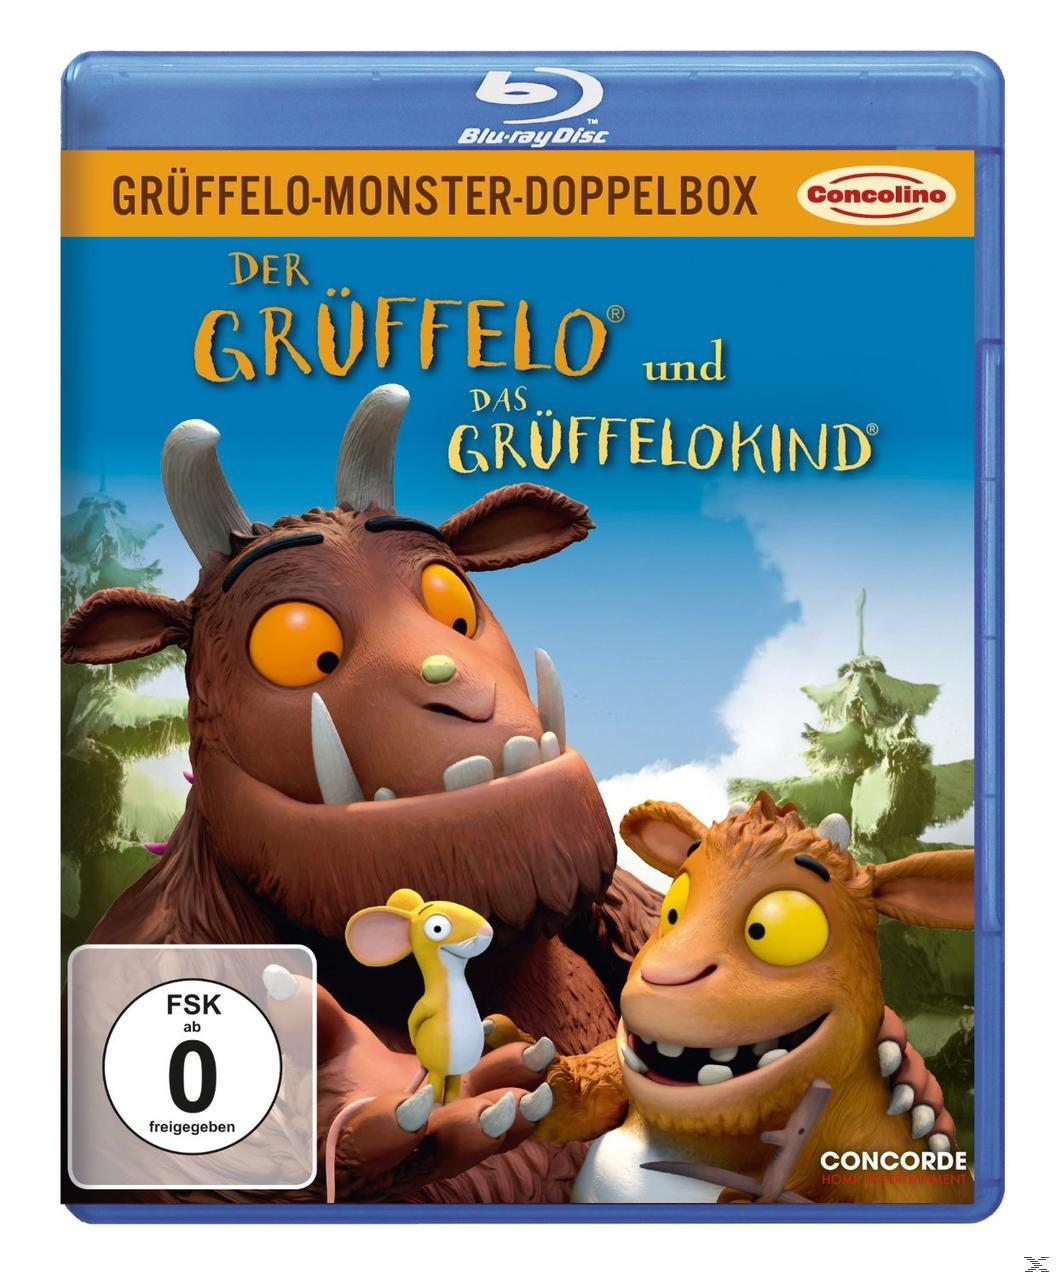 Grüffelo-Monster-Doppelbox - Der Blu-ray und Grüffelo Grüffelokind Das